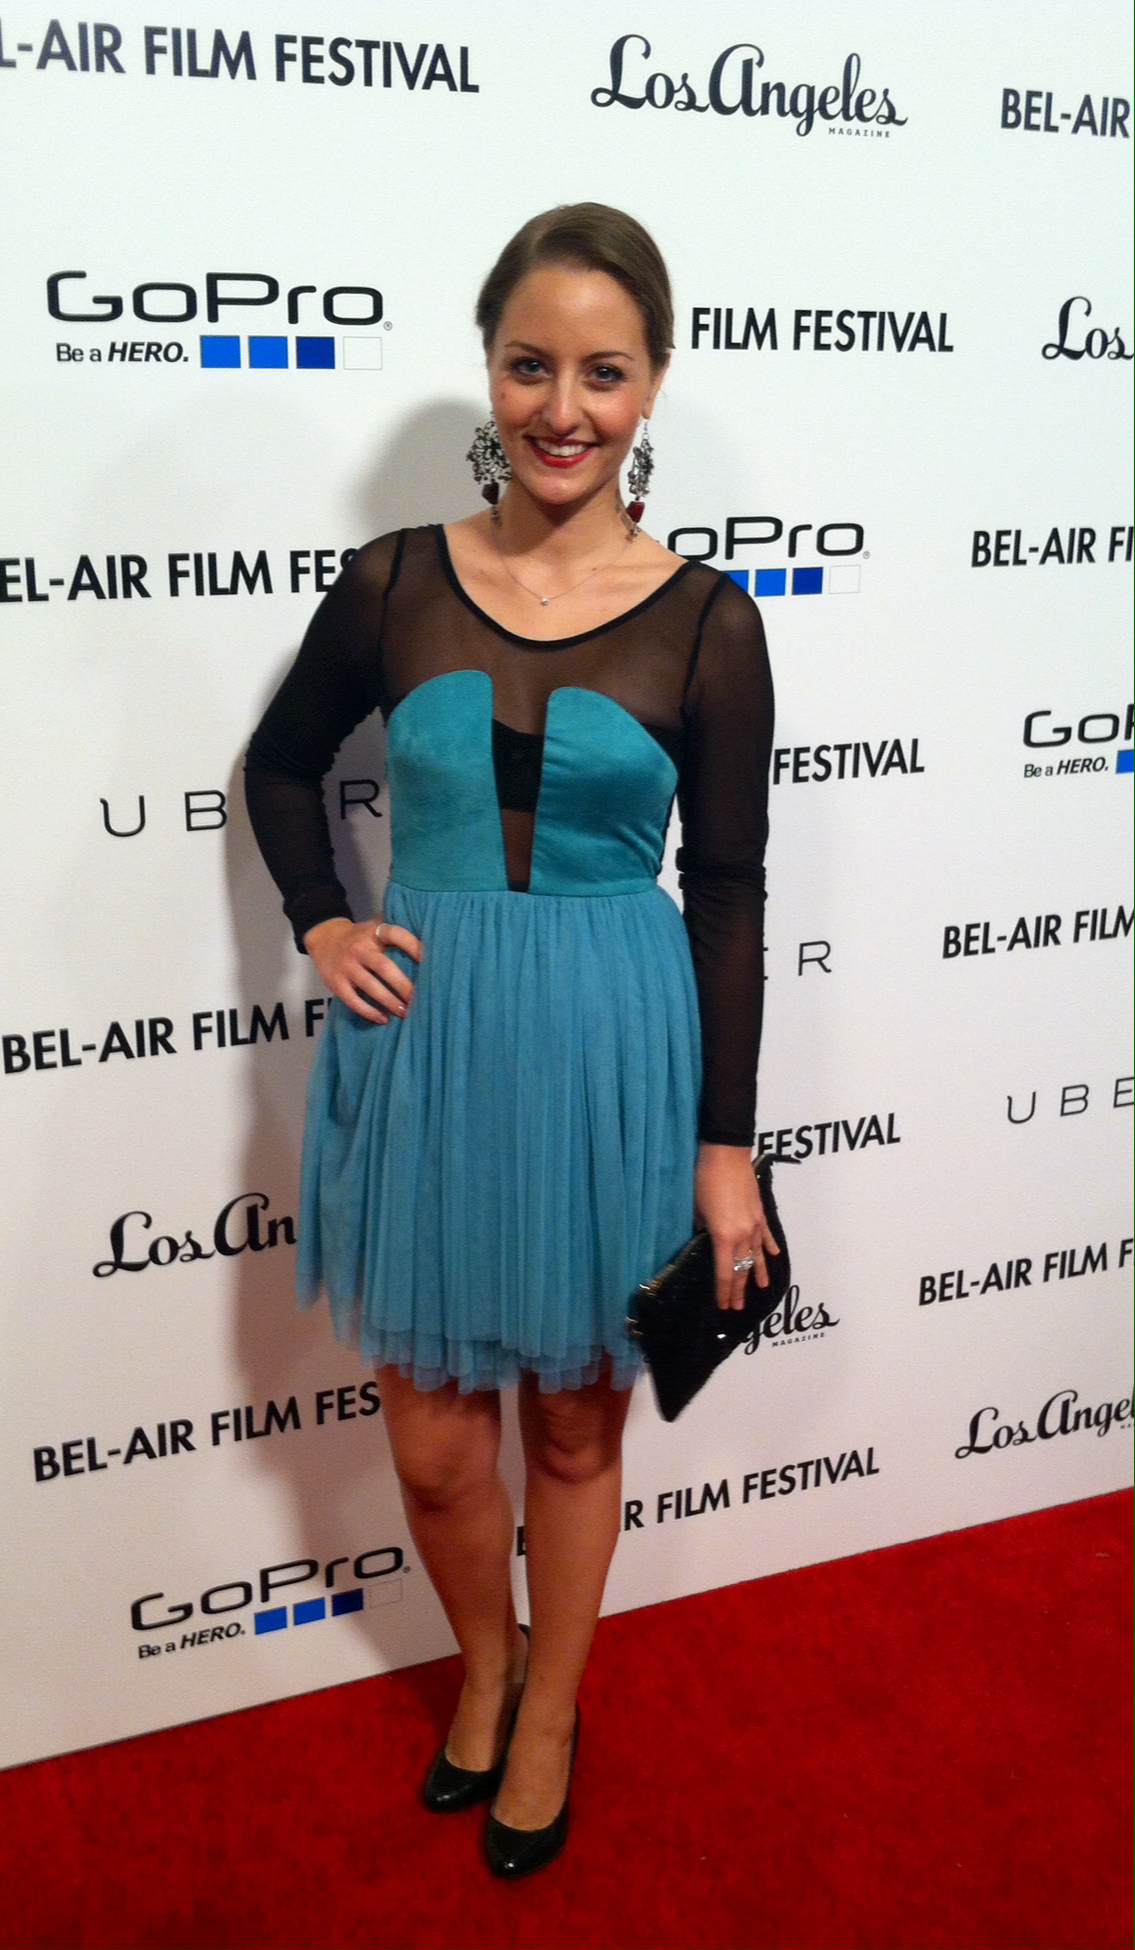 Bel-Air Film Festival 2013